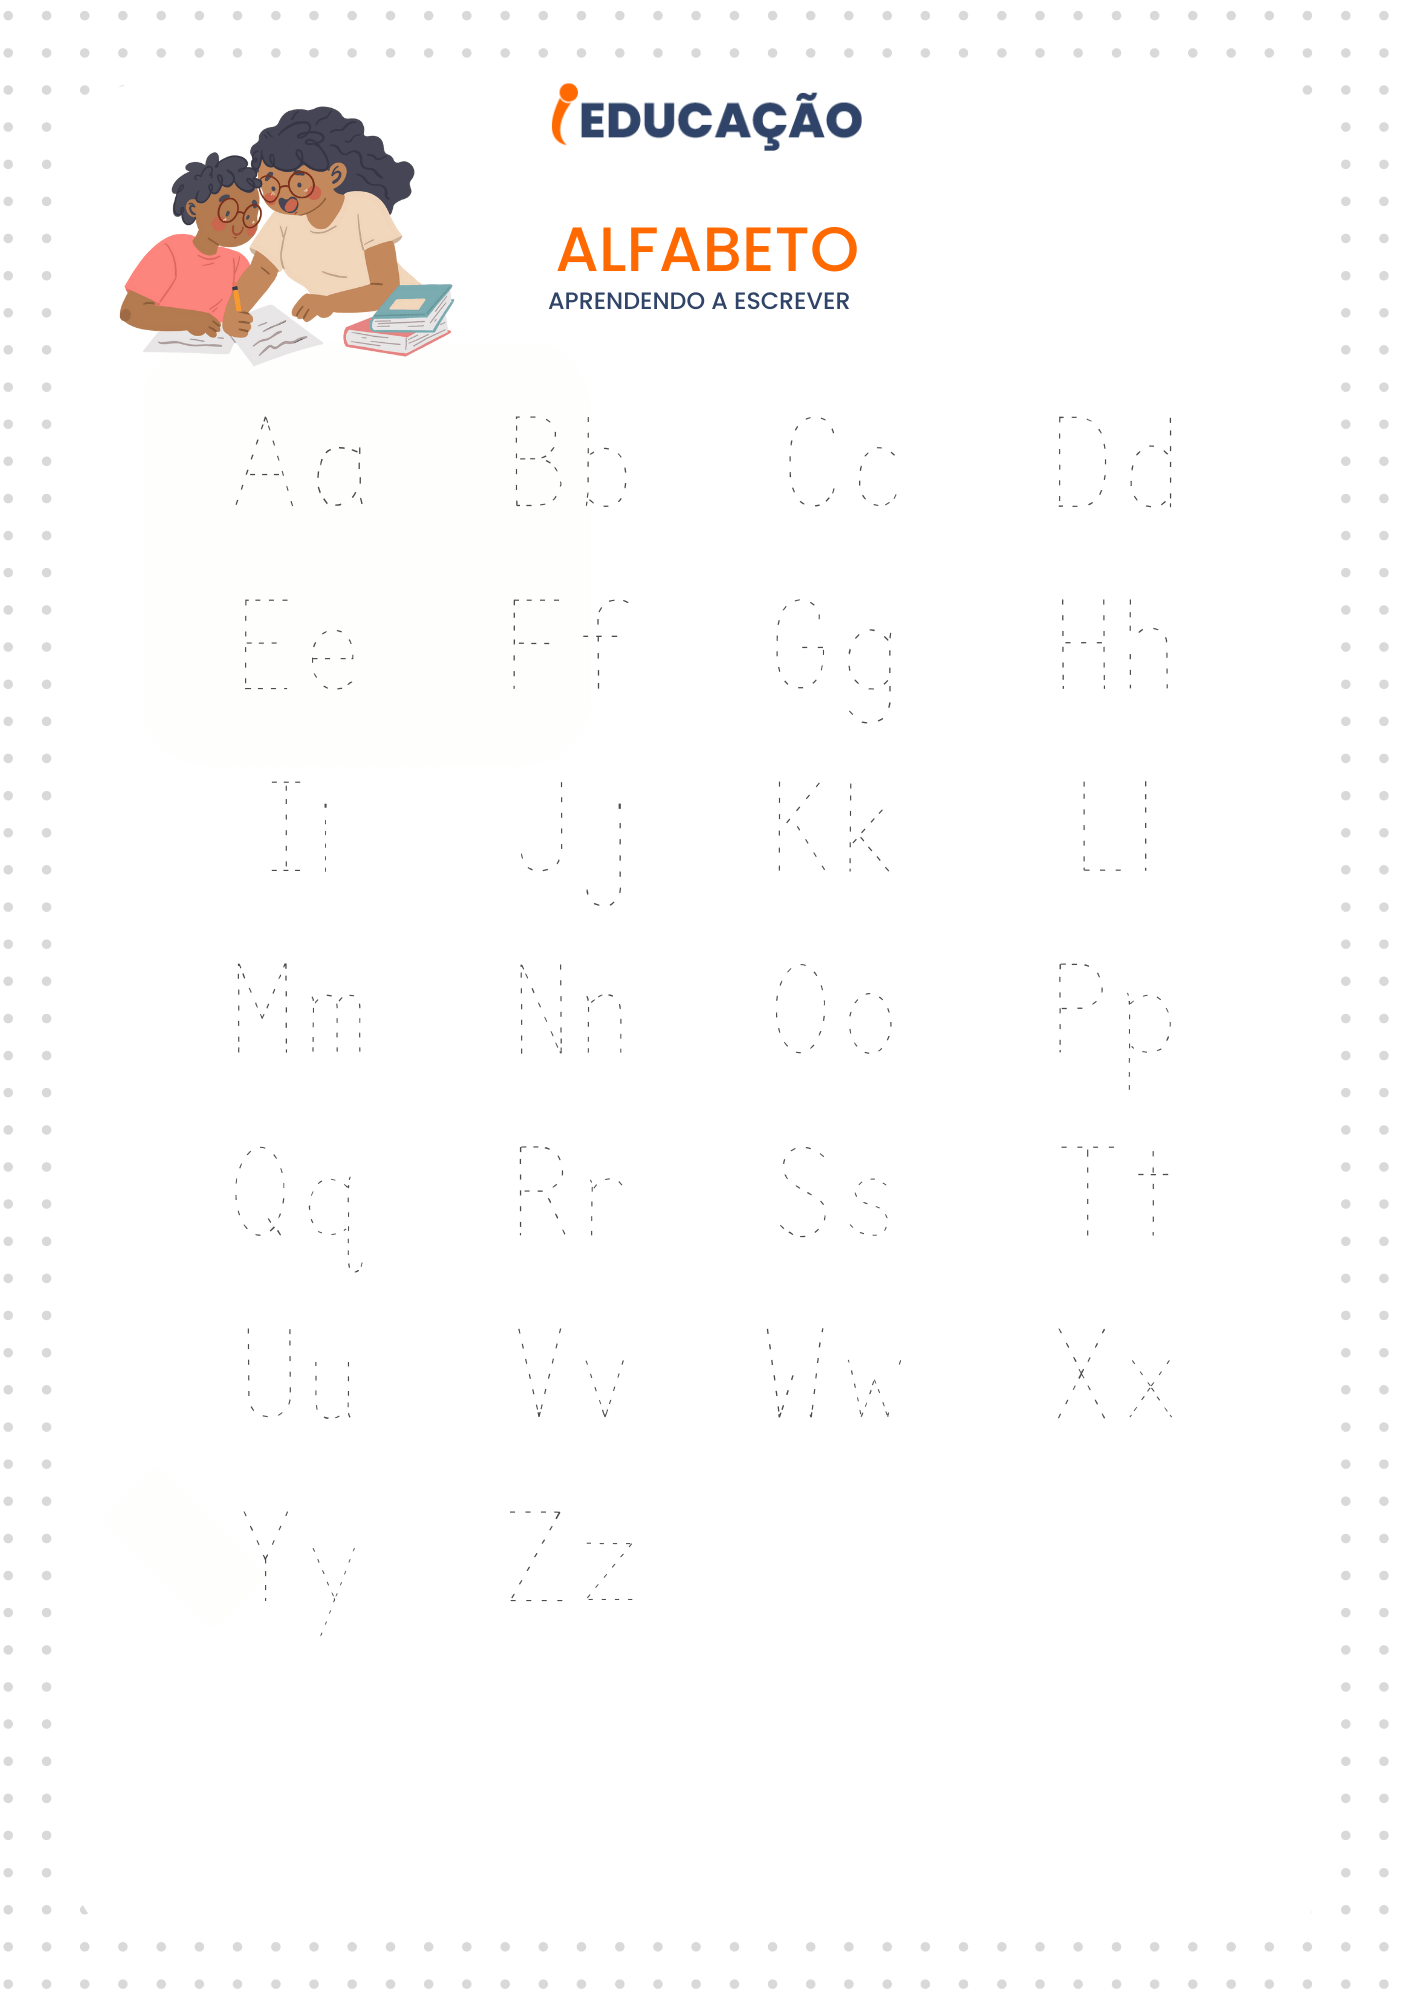 Alfabeto pontilhado - atividade para ensinar a escrever o alfabeto